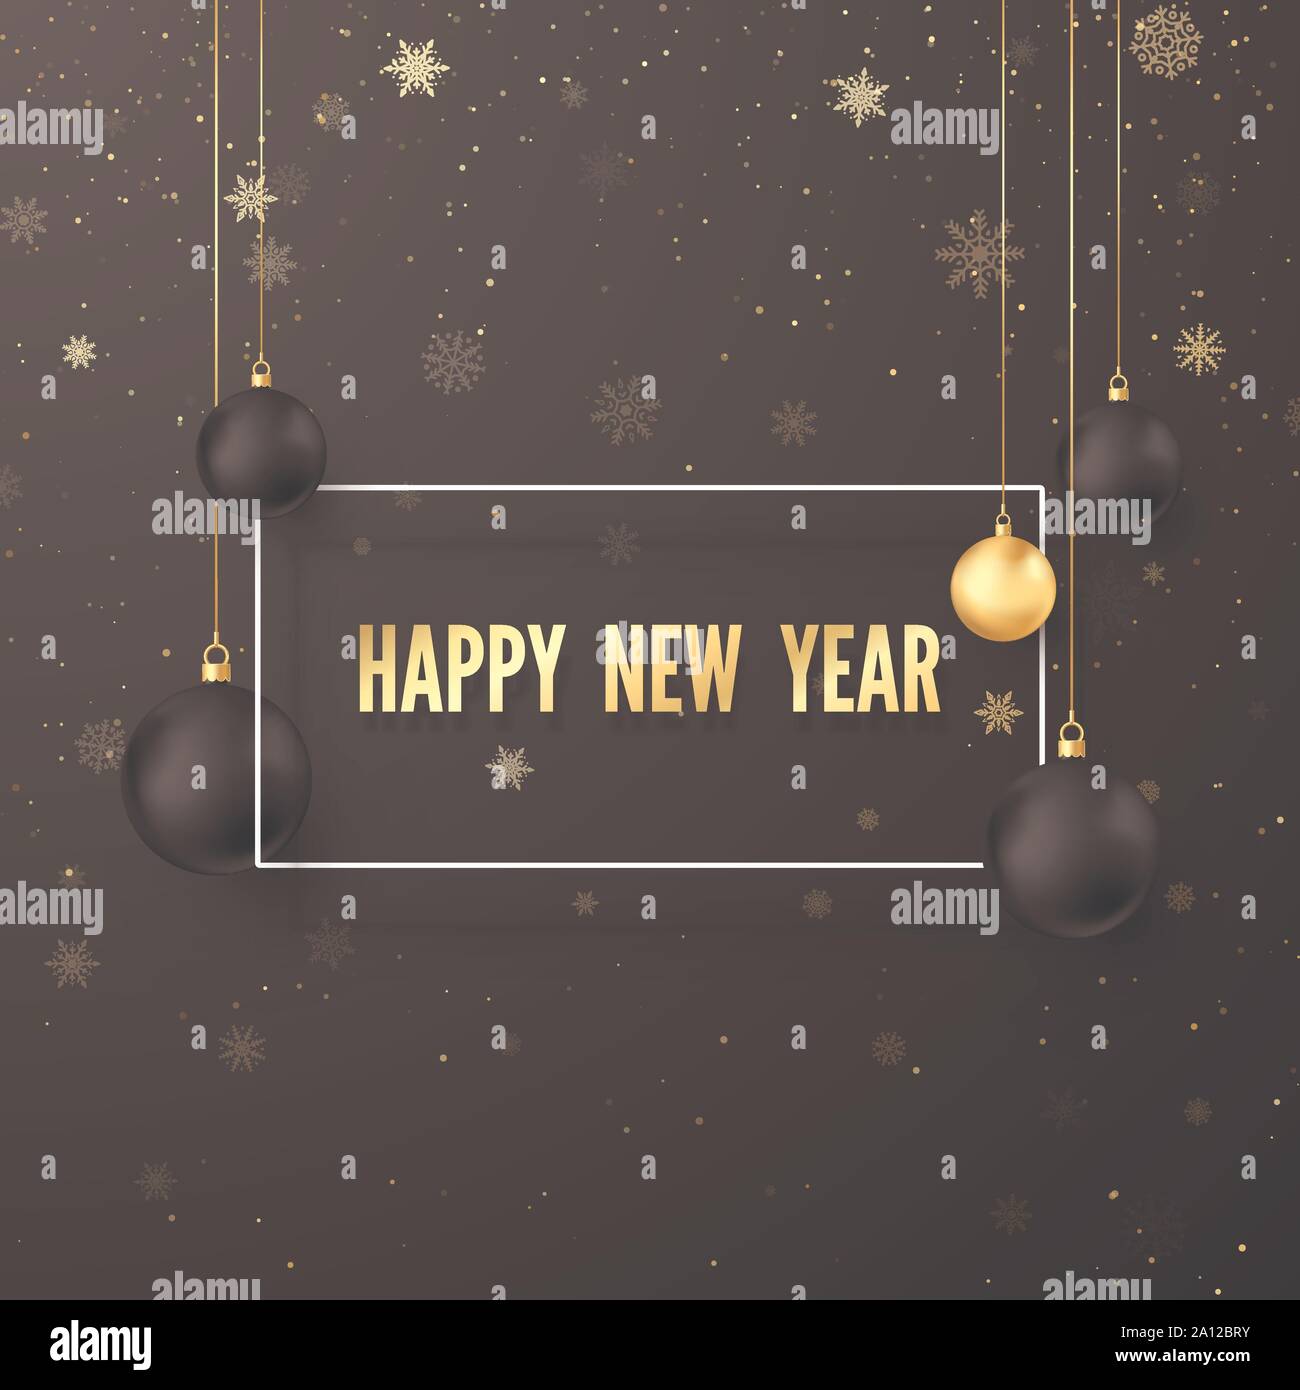 Neues Jahr Grußkarte. Golden Text in weißen Rahmen auf dunklem Hintergrund mit Weihnachten Dekoration schwarze und goldene Kugeln. Vector Illustration Stock Vektor